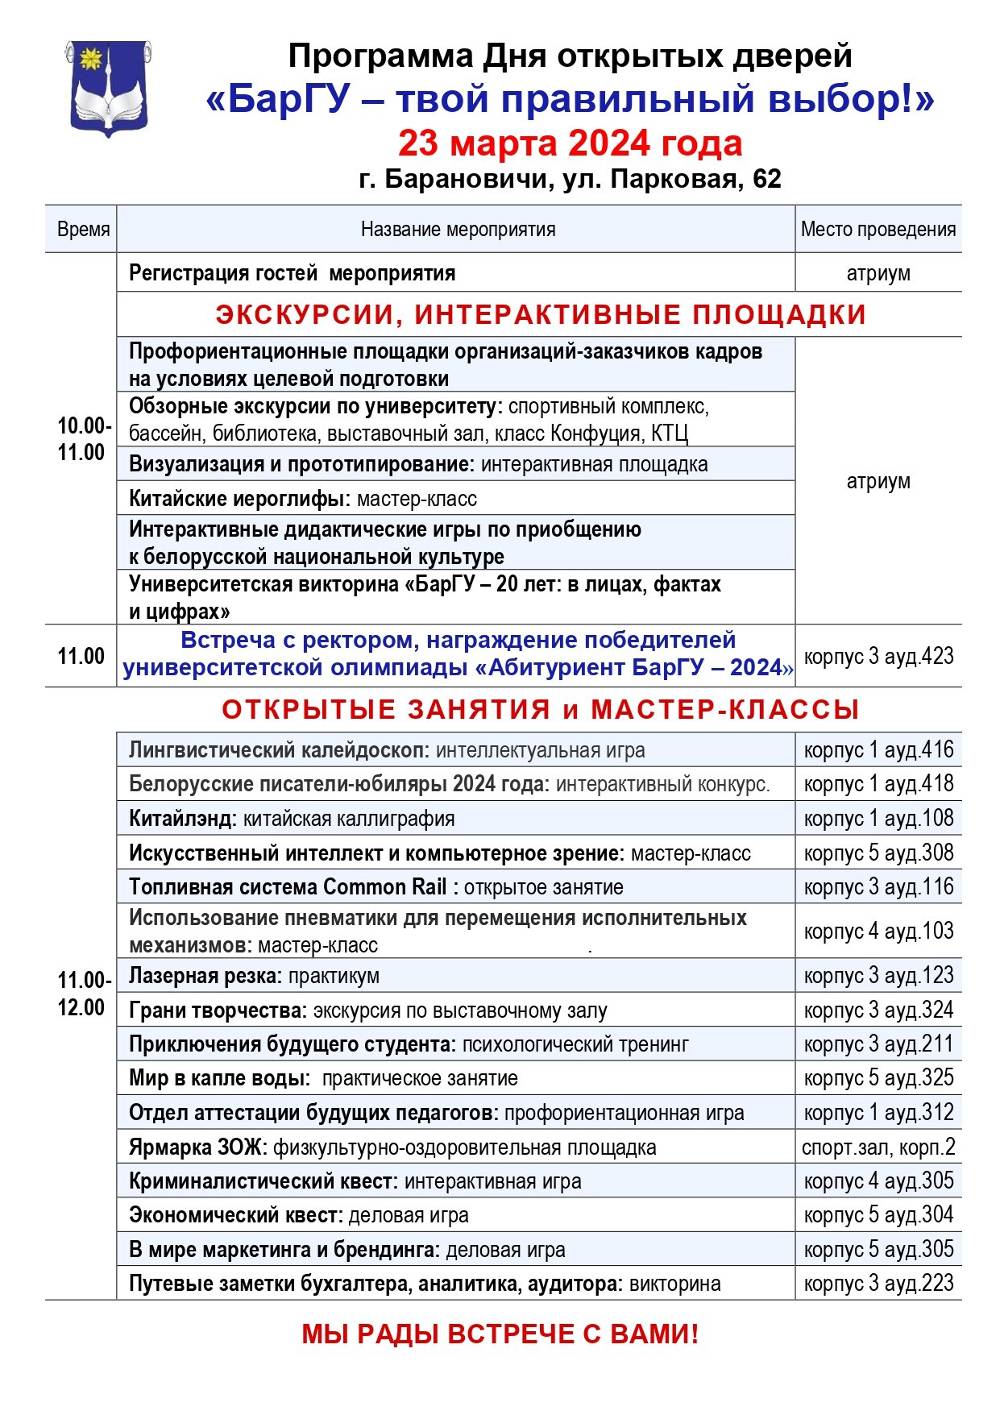 Программа Дня открытых дверей БарГУ 2024_page-0001 (1)